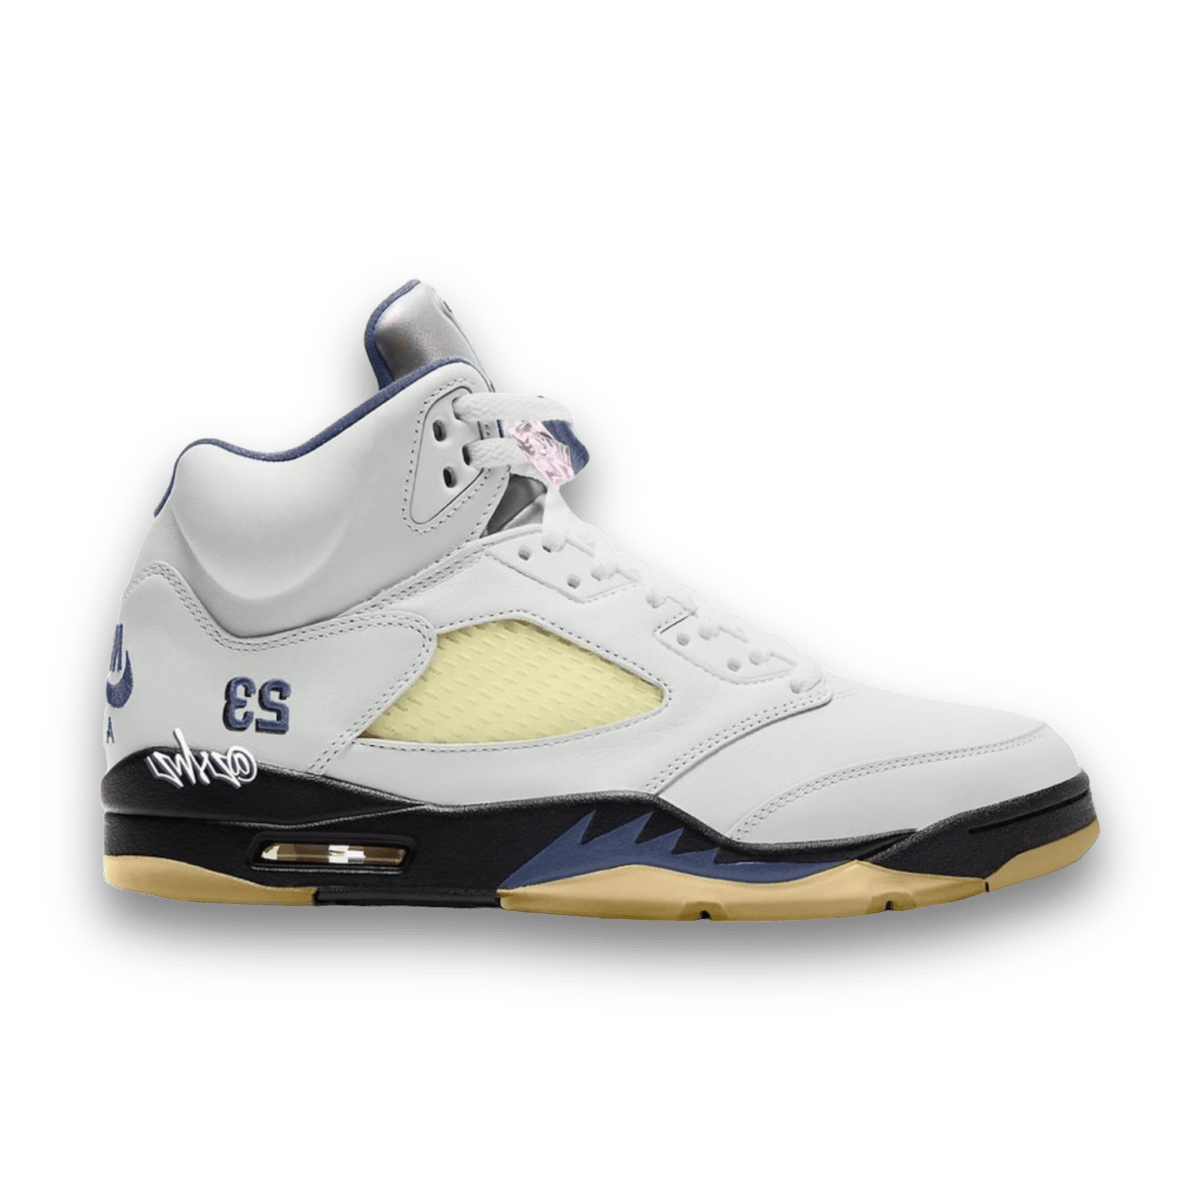 A Ma Maniére x Air Jordan 5 Retro 'Photon Dust' - Pre School - Mid Sneaker - Jawns on Fire Sneakers & Streetwear